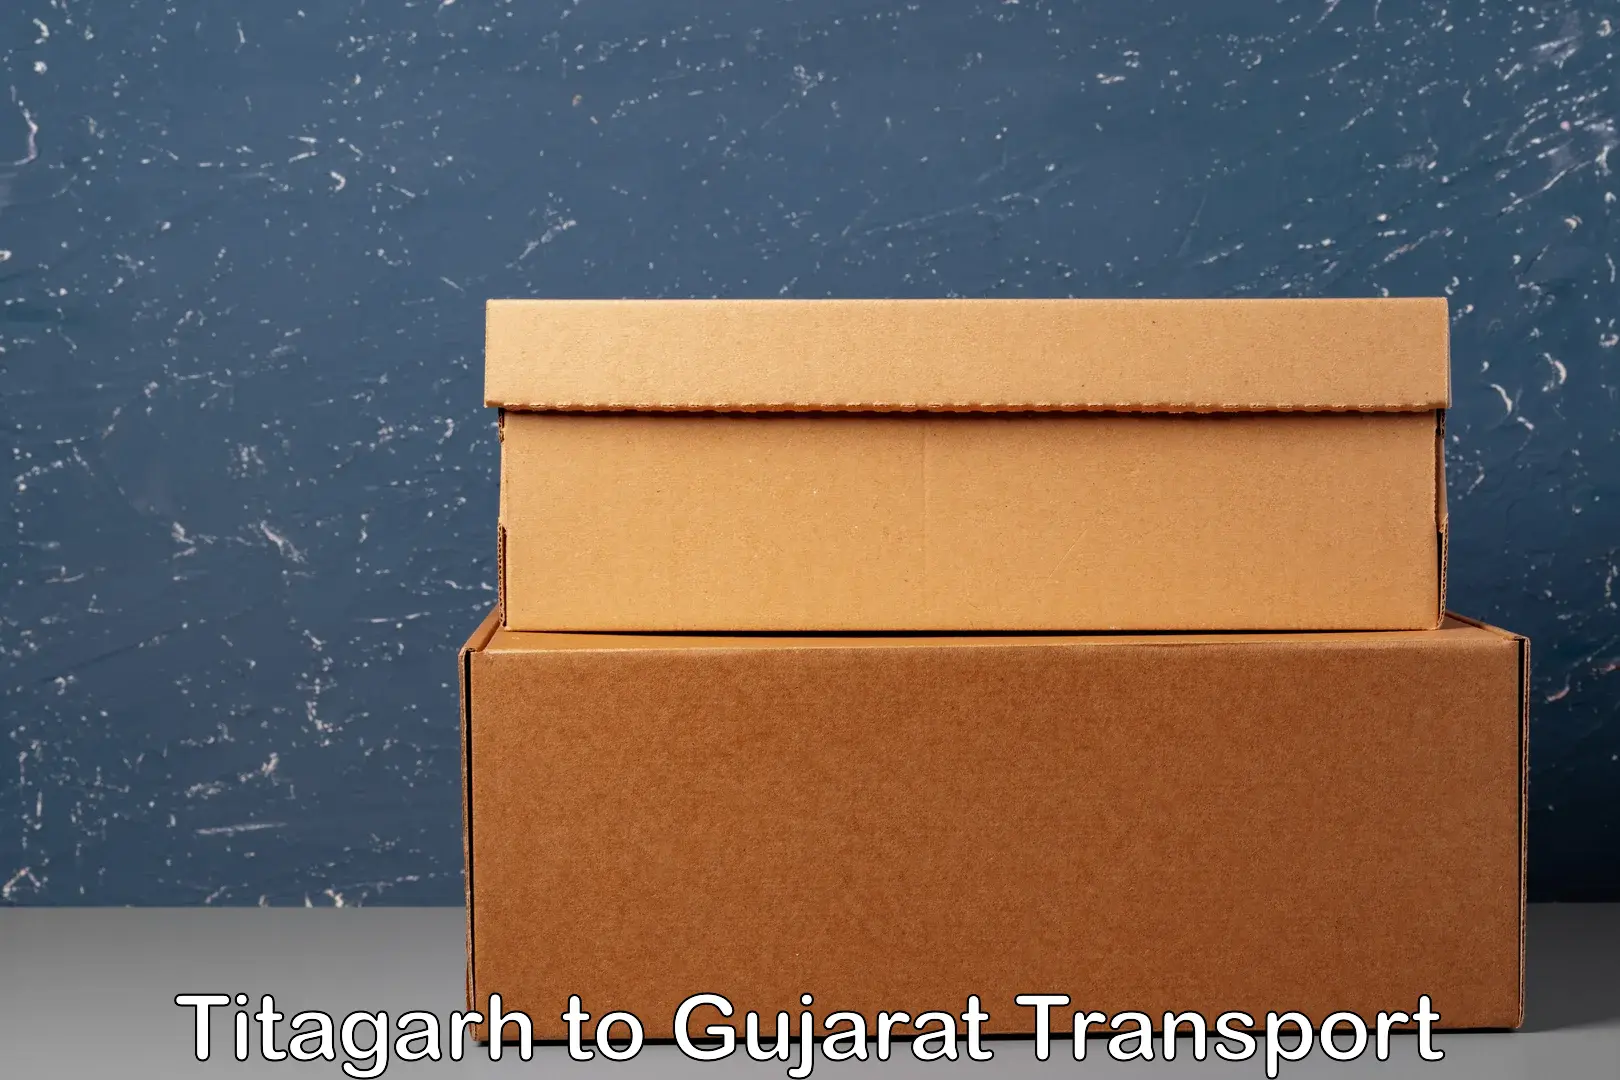 Cargo transport services Titagarh to IIT Gandhi Nagar